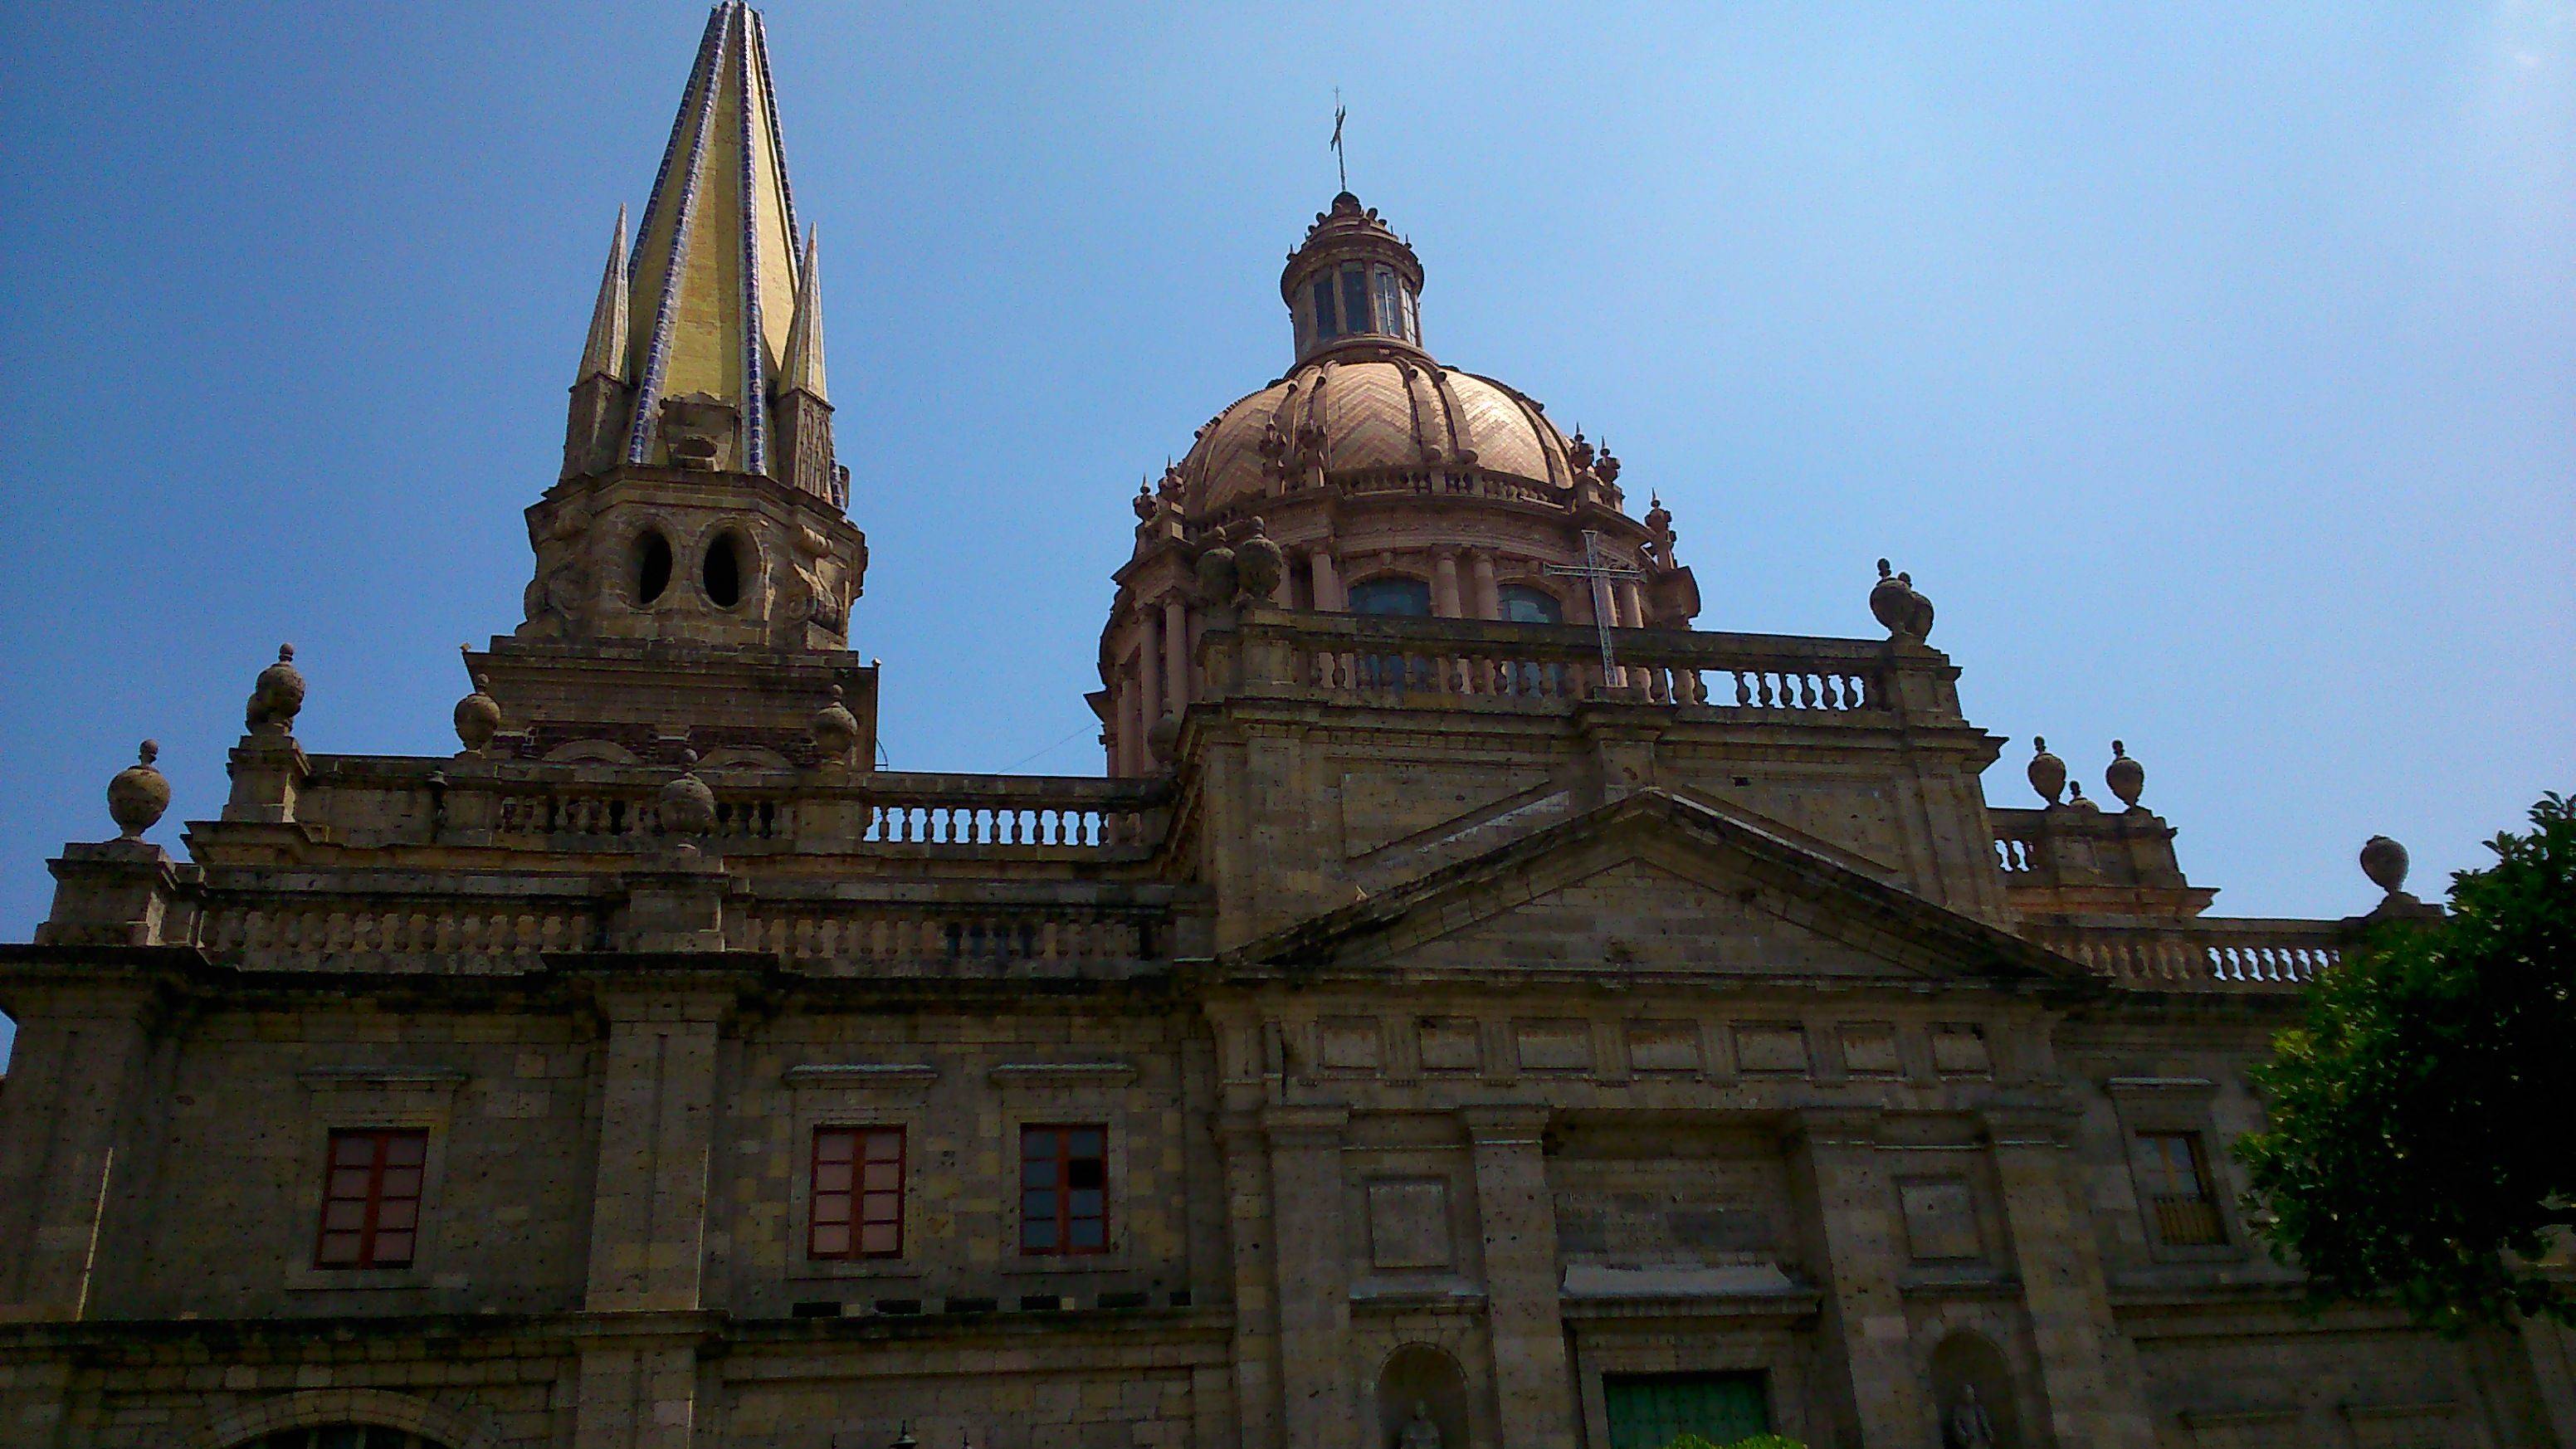 Trasferimento a Guadalajara de Buga e visita del lago Calima